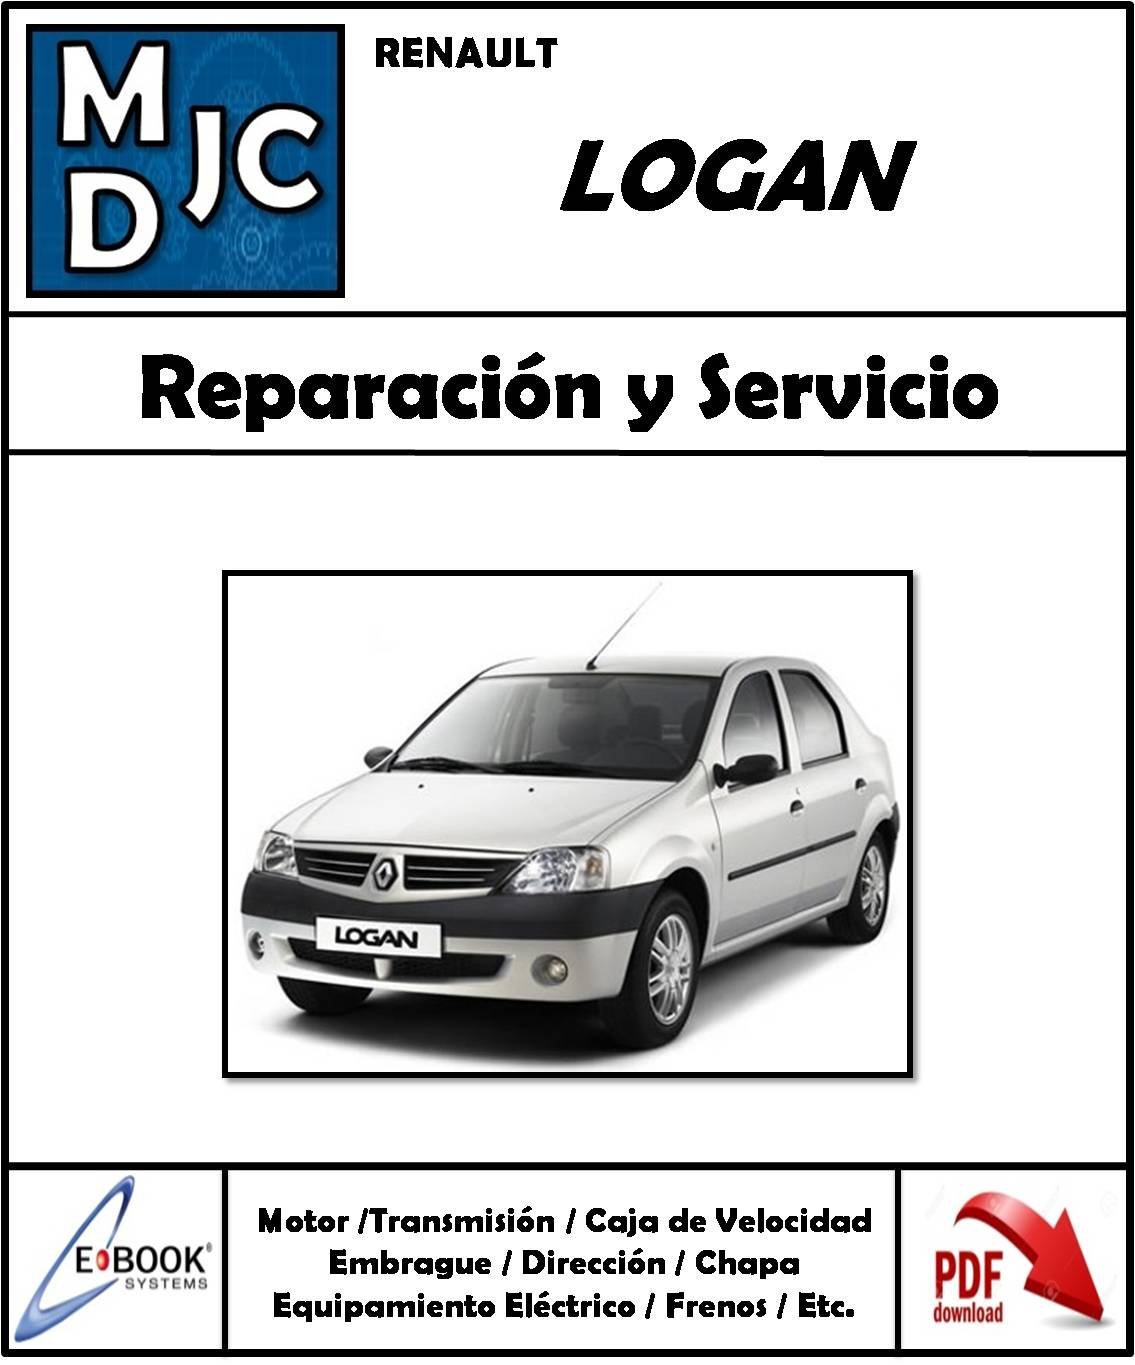 Manual de Taller (Reparación y Servicio) Renault Logan